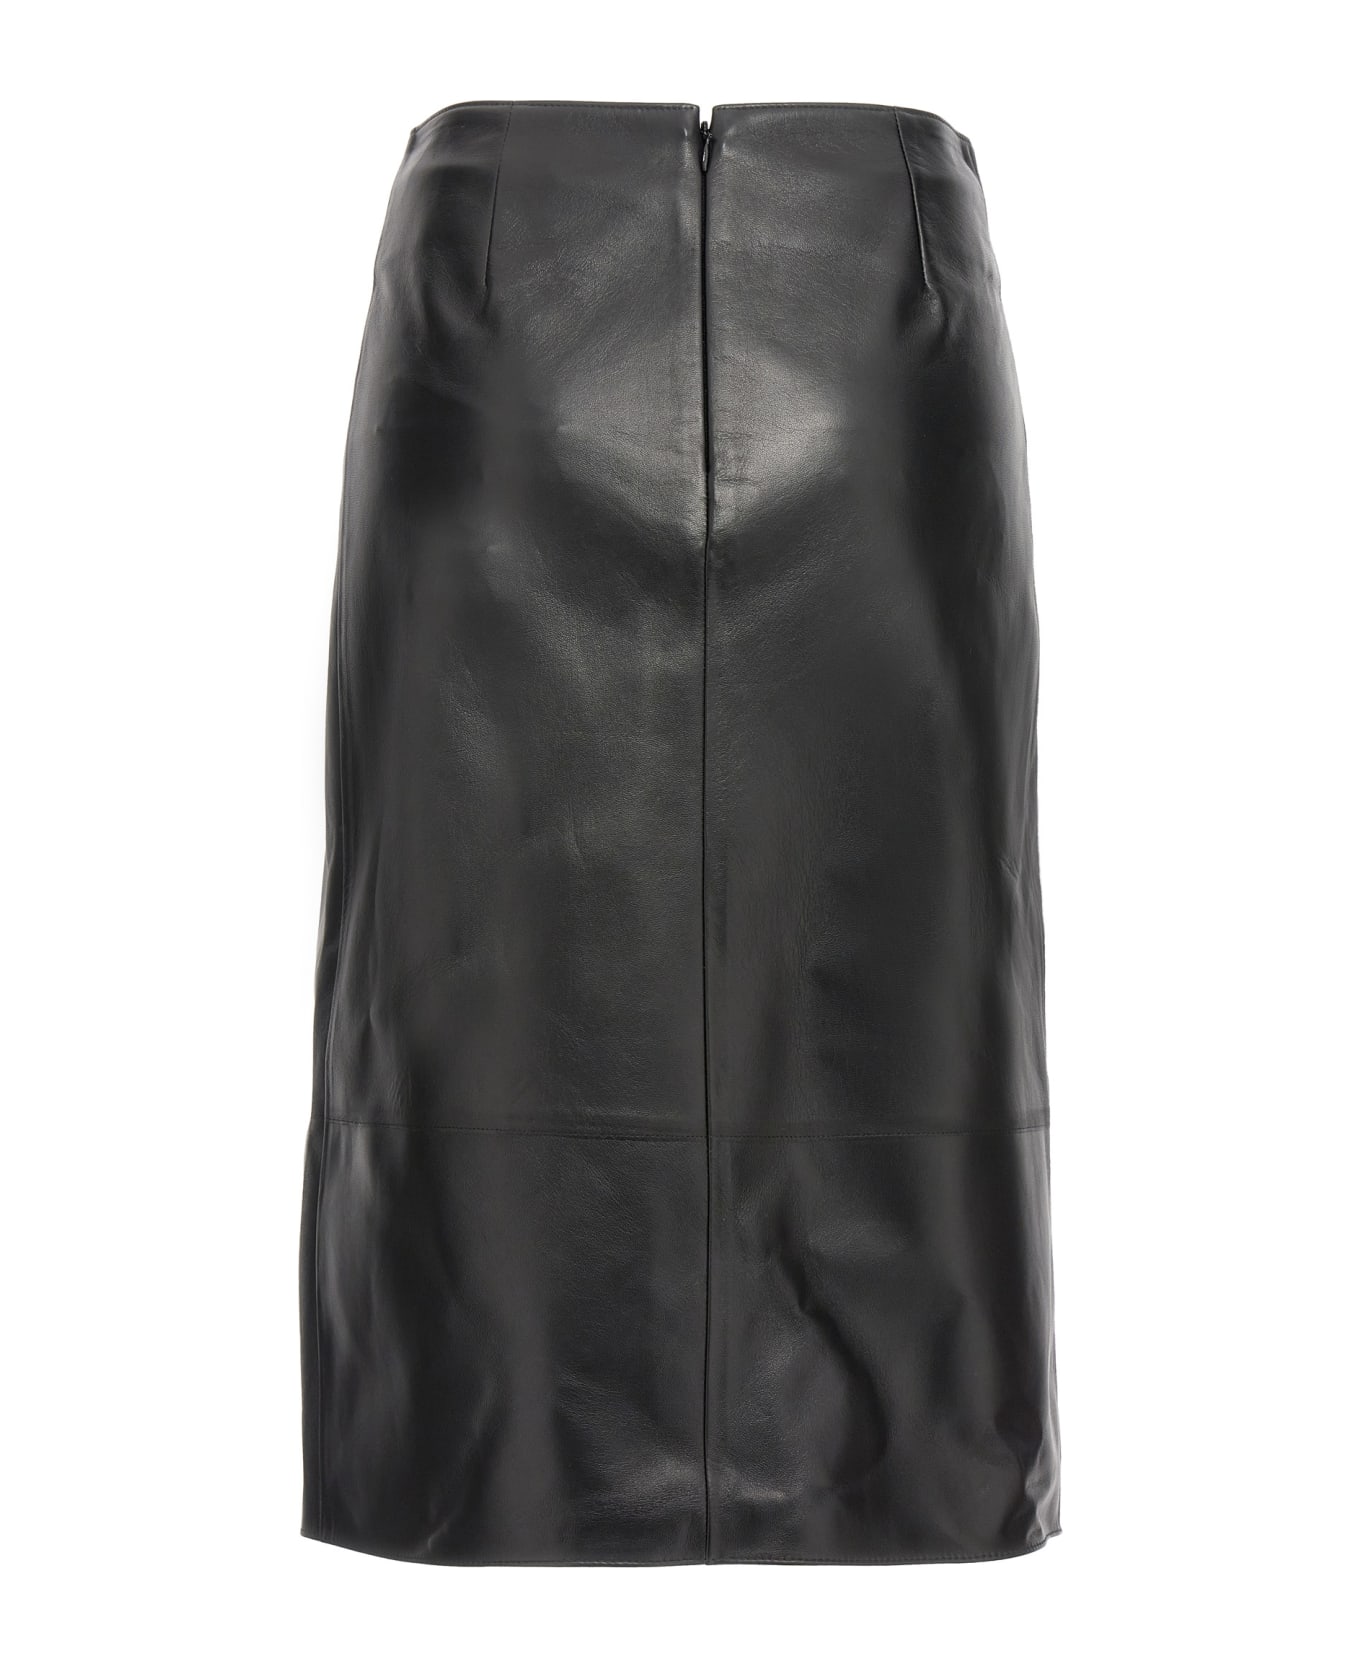 Bally Logo Leather Skirt - Black  